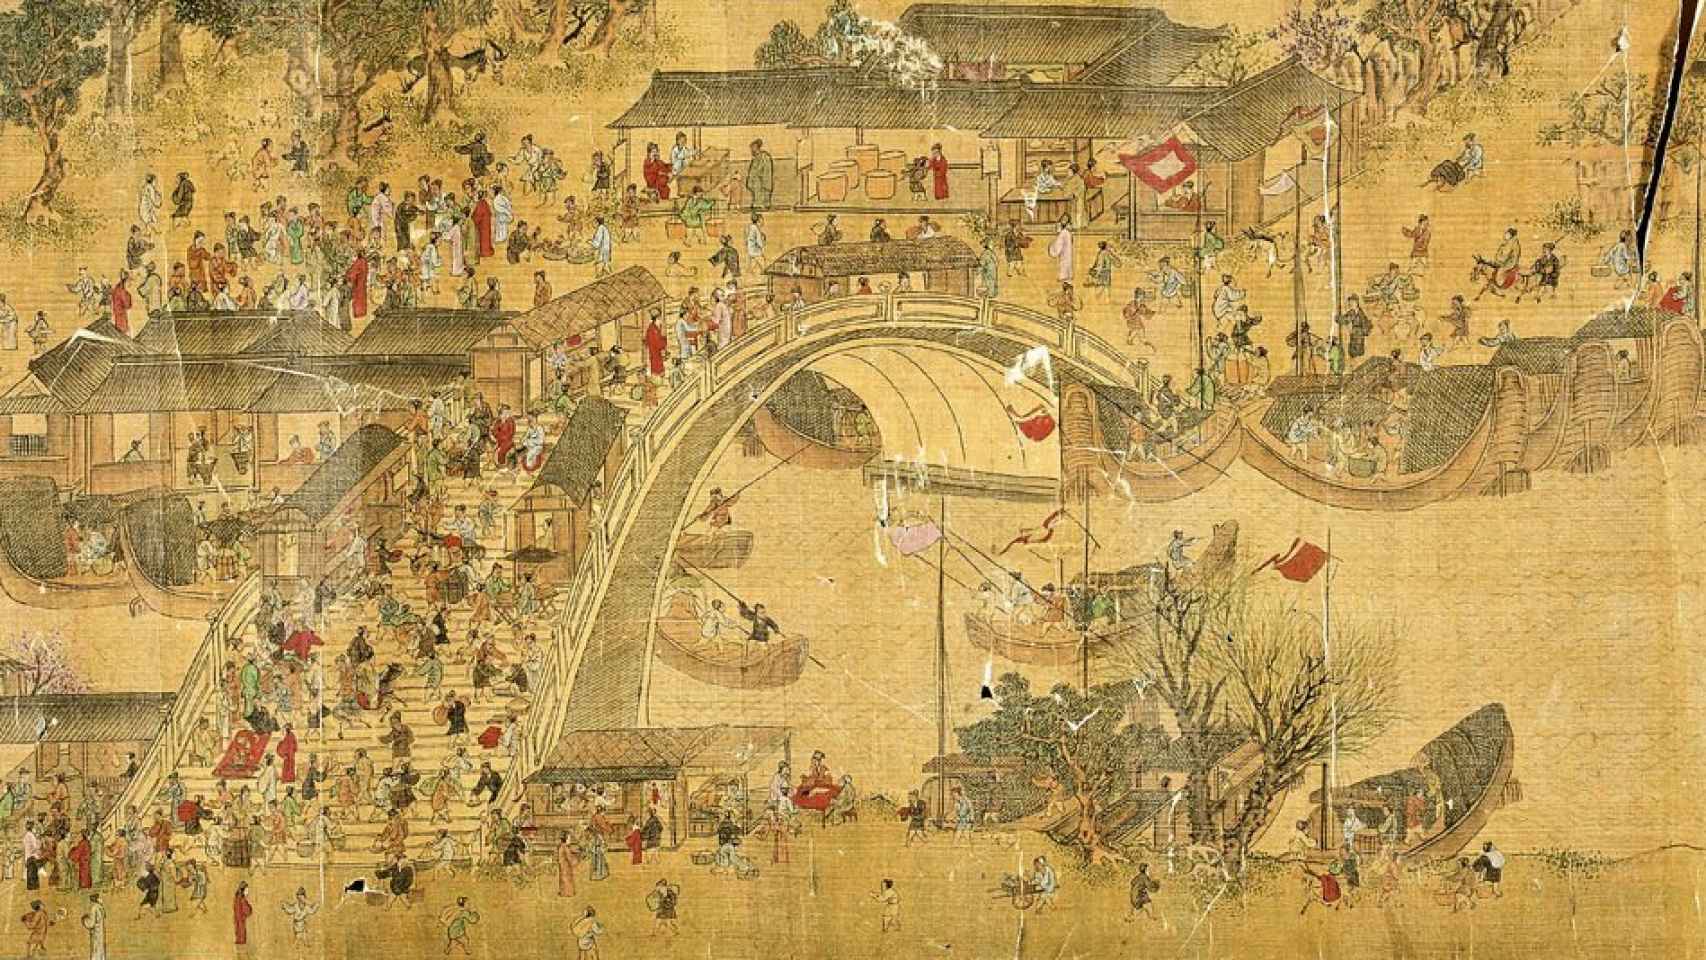 Gran ciudad china alrededor del siglo XII.